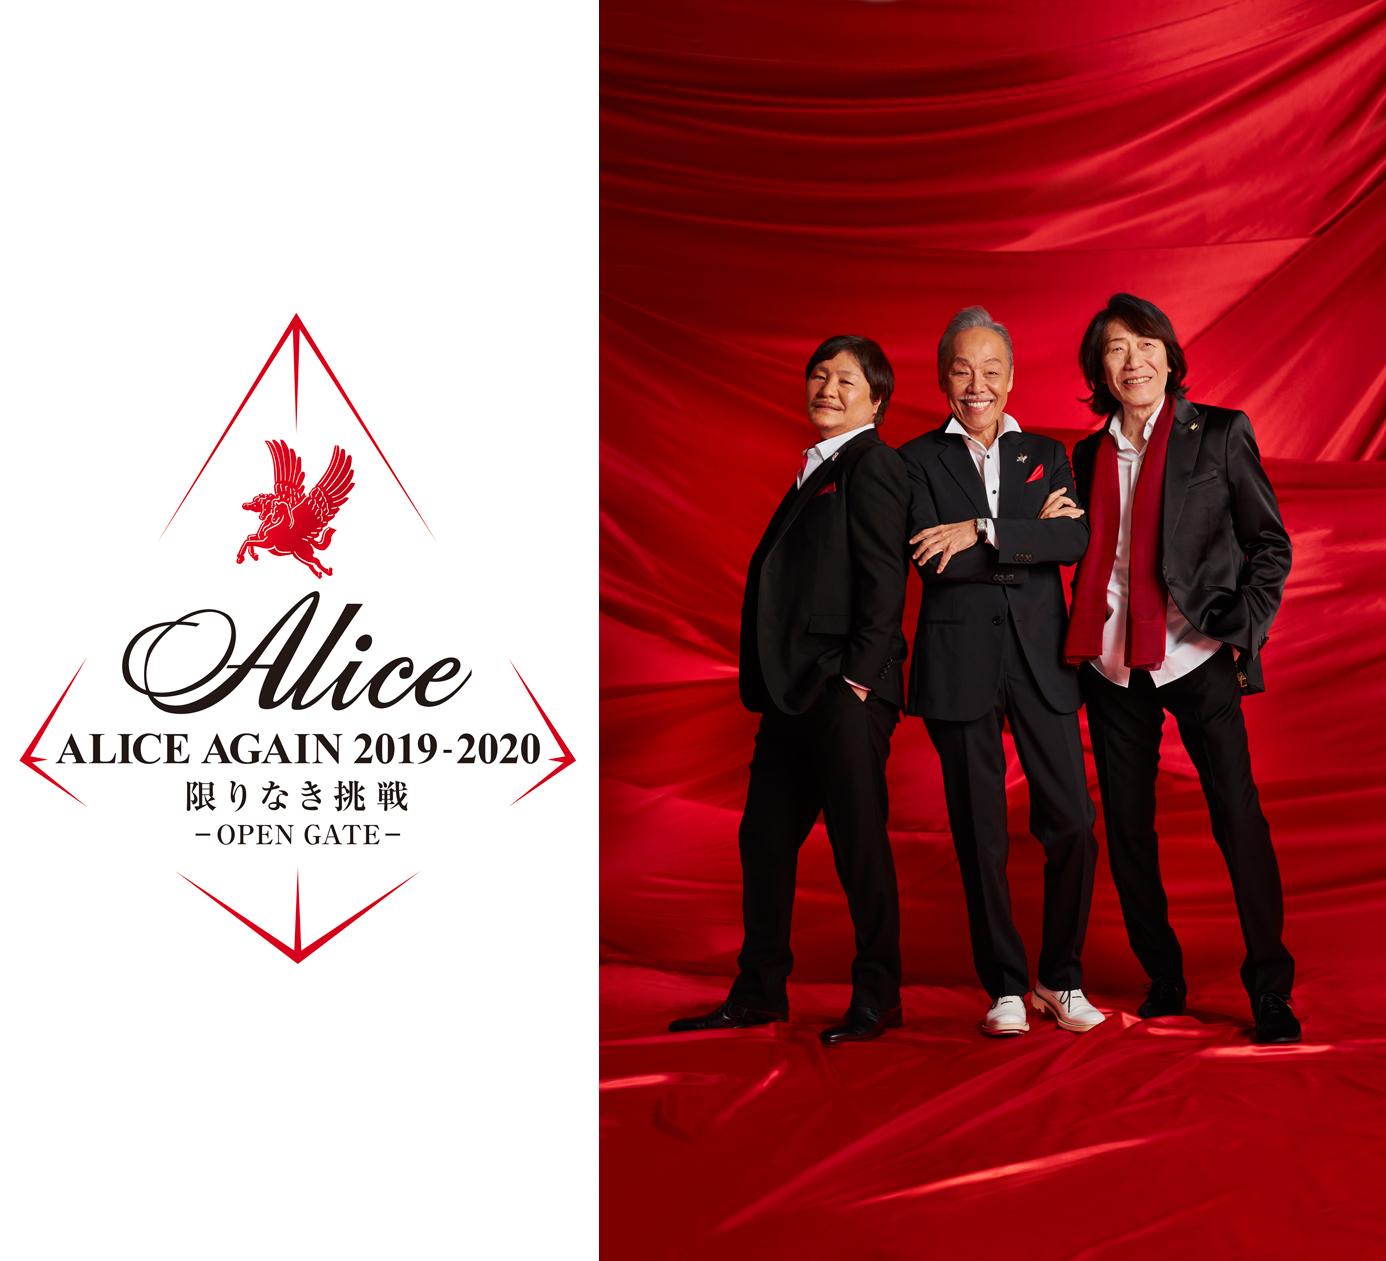 アリス Alice Again 19 限りなき挑戦 Open Gate イベント情報 札幌市民交流プラザ